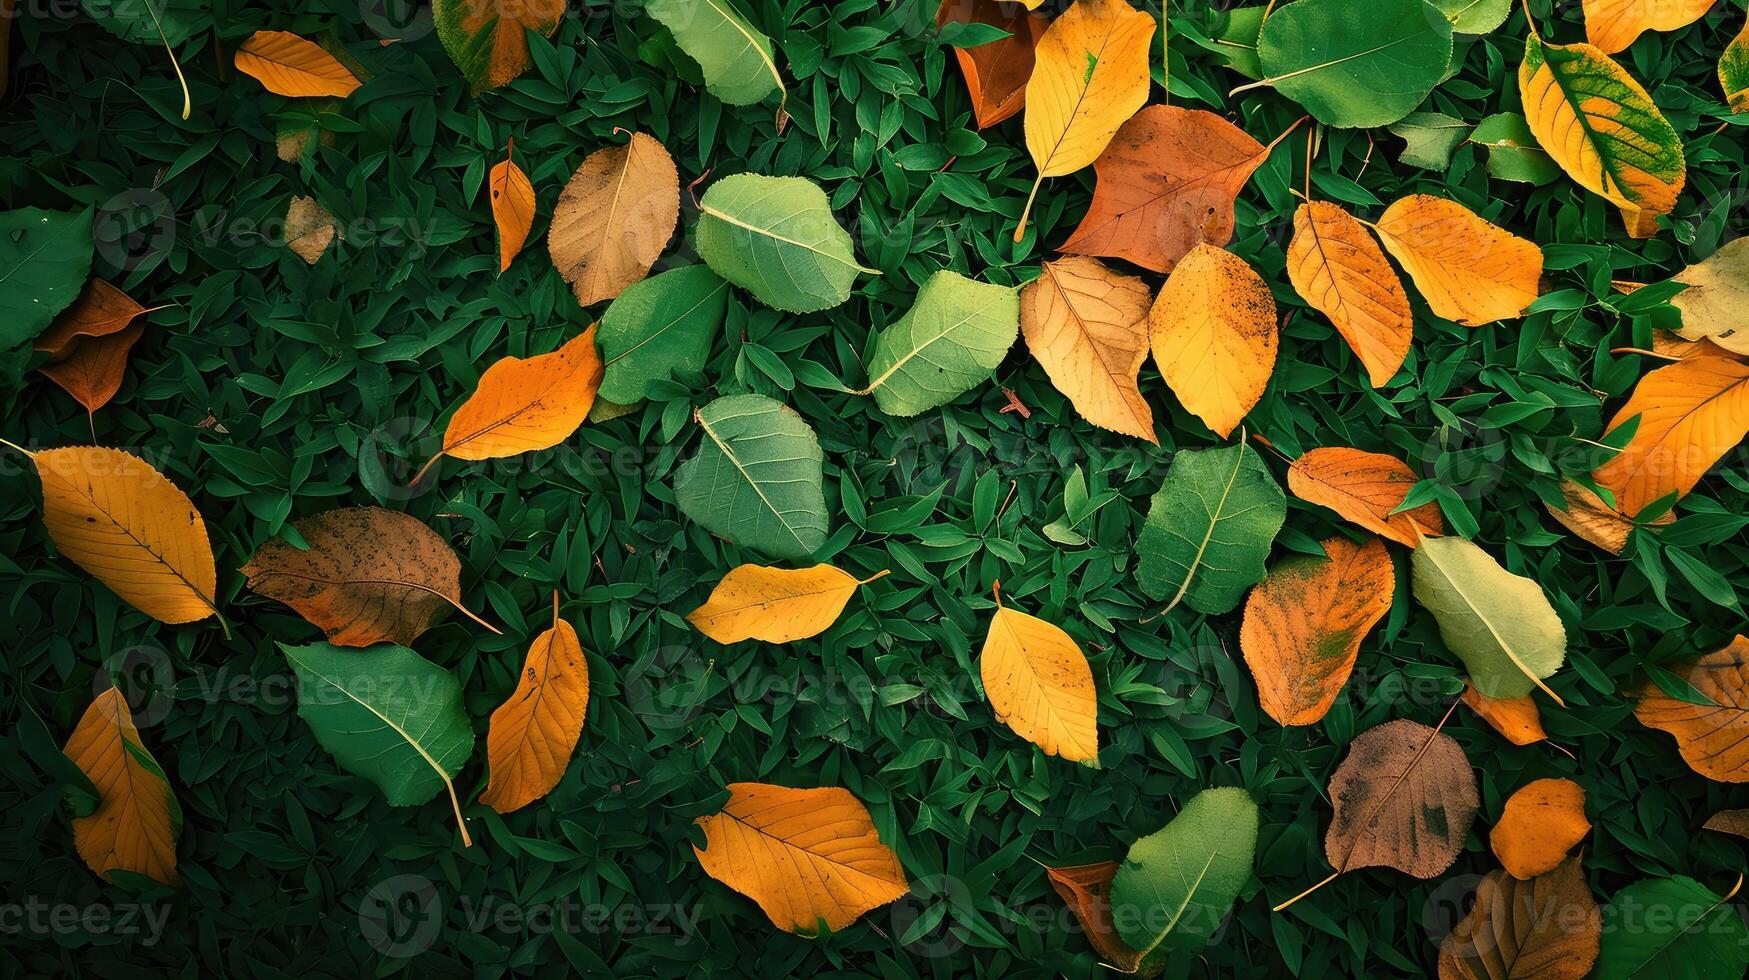 ai gerado a fundo imagem este é verde, a cores do a outono folhas estão perfeito, adequado para sazonal usar. foto